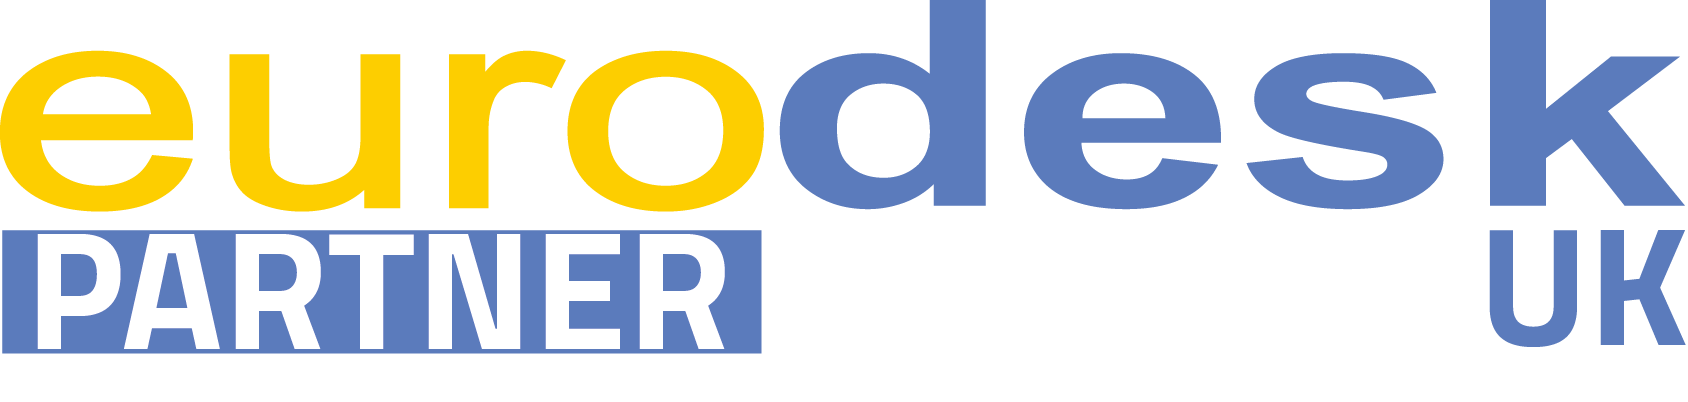 Eurodesk partner logo.png